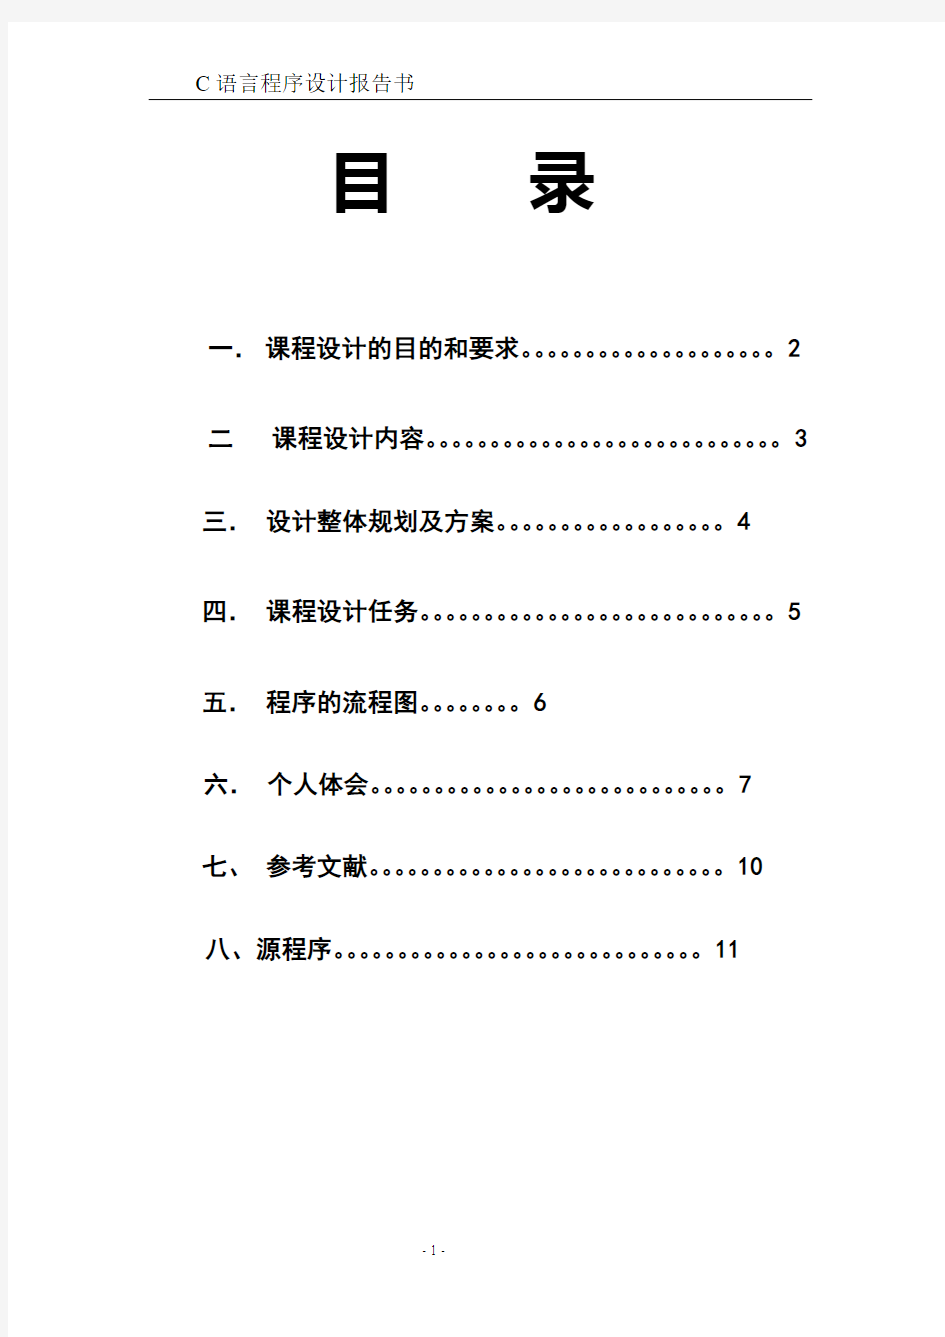 中南大学个人通讯录管理系统实验报告+源码(C语言版)